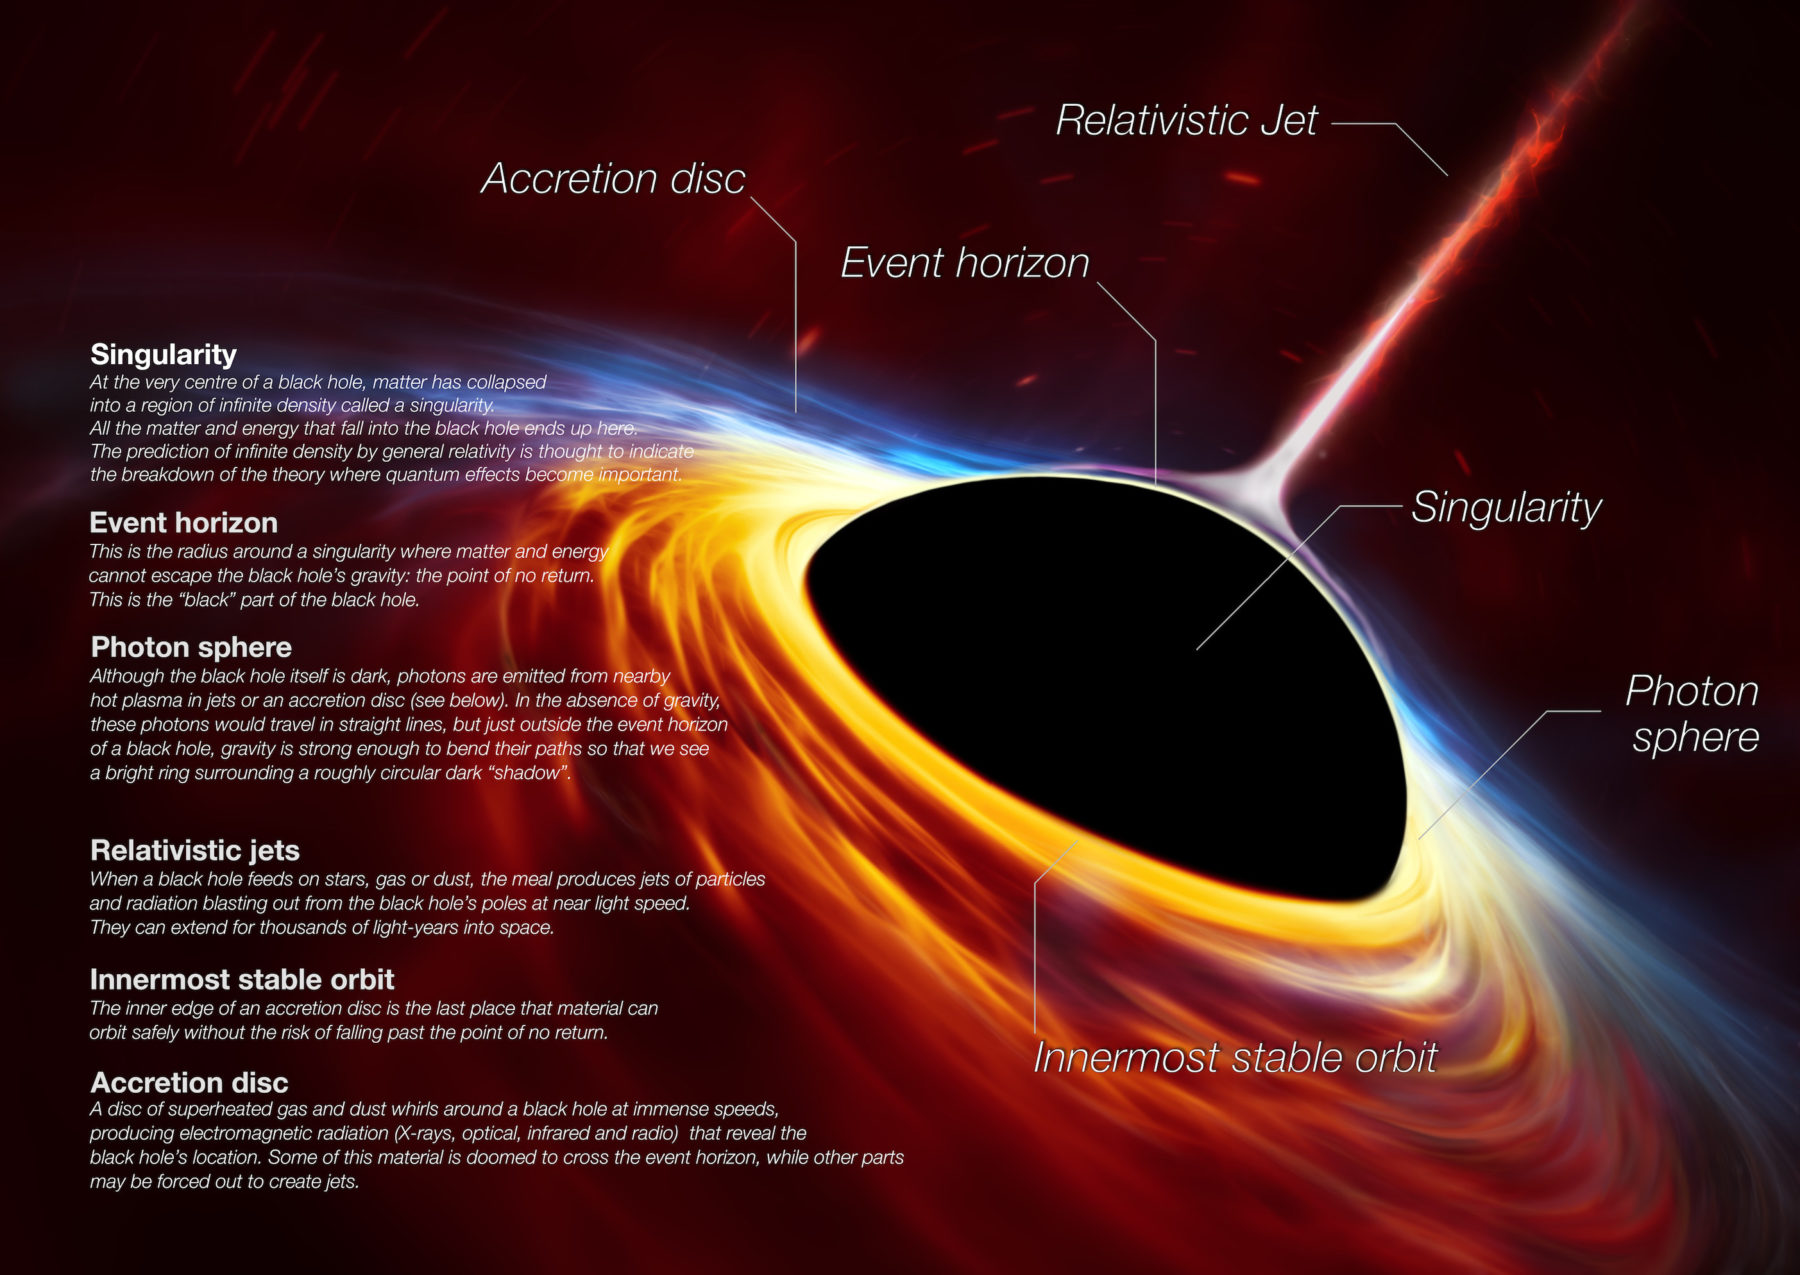 L'ombre d'un trou noir vue ici est la plus proche possible d'une image du trou noir lui-même, un objet complètement sombre duquel la lumière ne peut s'échapper. La limite du trou noir - l'horizon des événements qui a donné son nom à l'EHT - est environ 2,5 fois plus petite que l'ombre qu'il projette et mesure un peu moins de 40 milliards de km de diamètre. Bien que cela puisse paraître gros, cet anneau ne mesure qu'environ 40 micro-secondes d'arc, ce qui équivaut à mesurer la longueur d'une carte de crédit à la surface de la Lune. © ESO